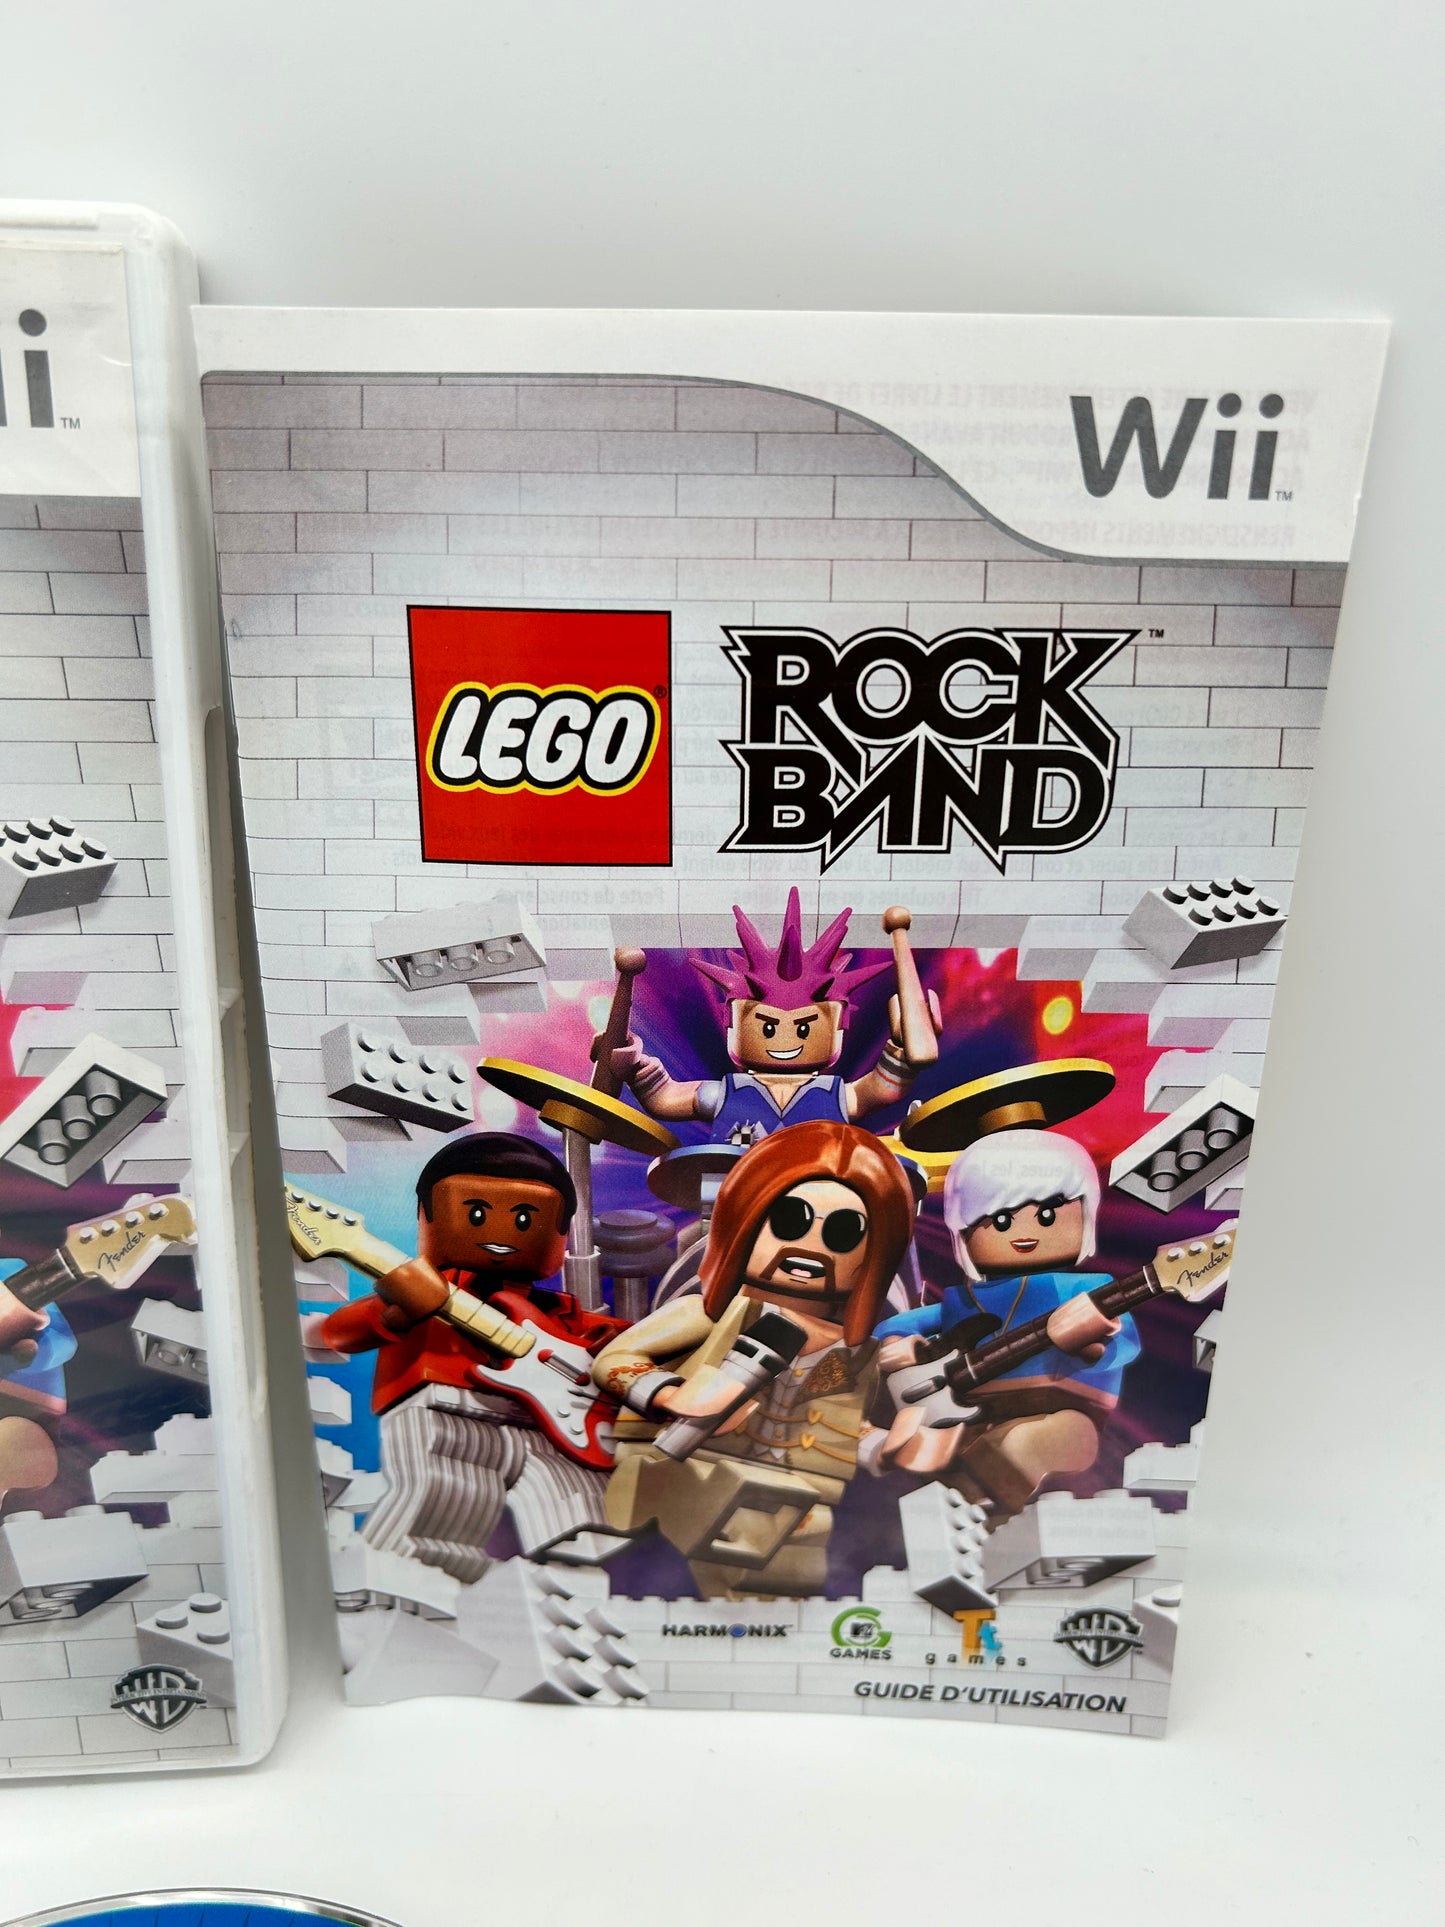 NiNTENDO Wii | LEGO ROCK BAND